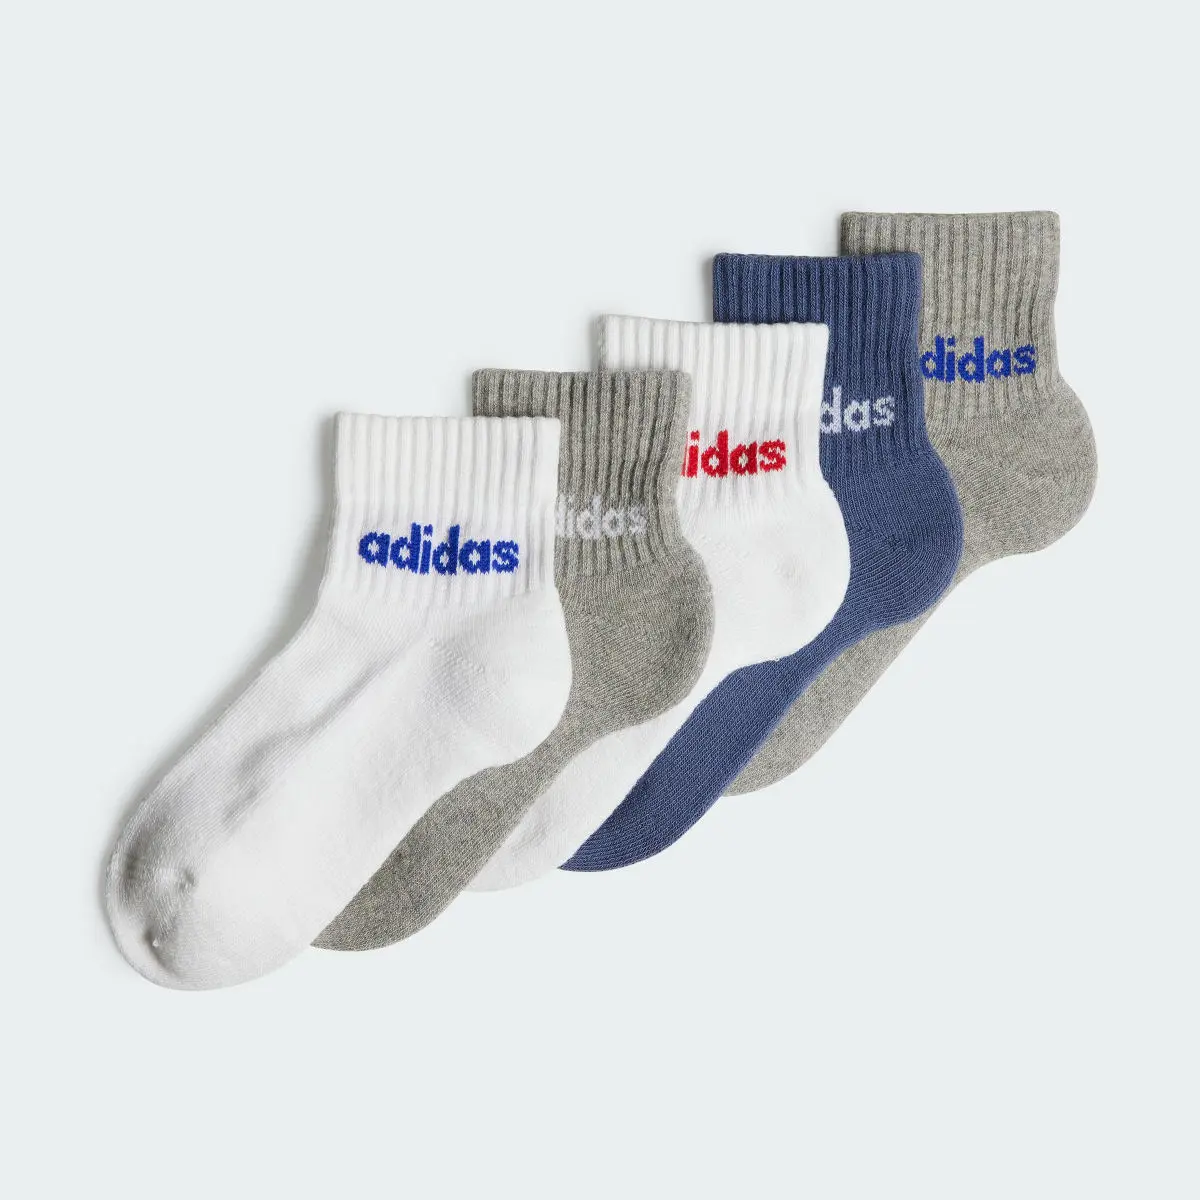 Adidas Socquettes Linear (5 paires) Enfants. 2